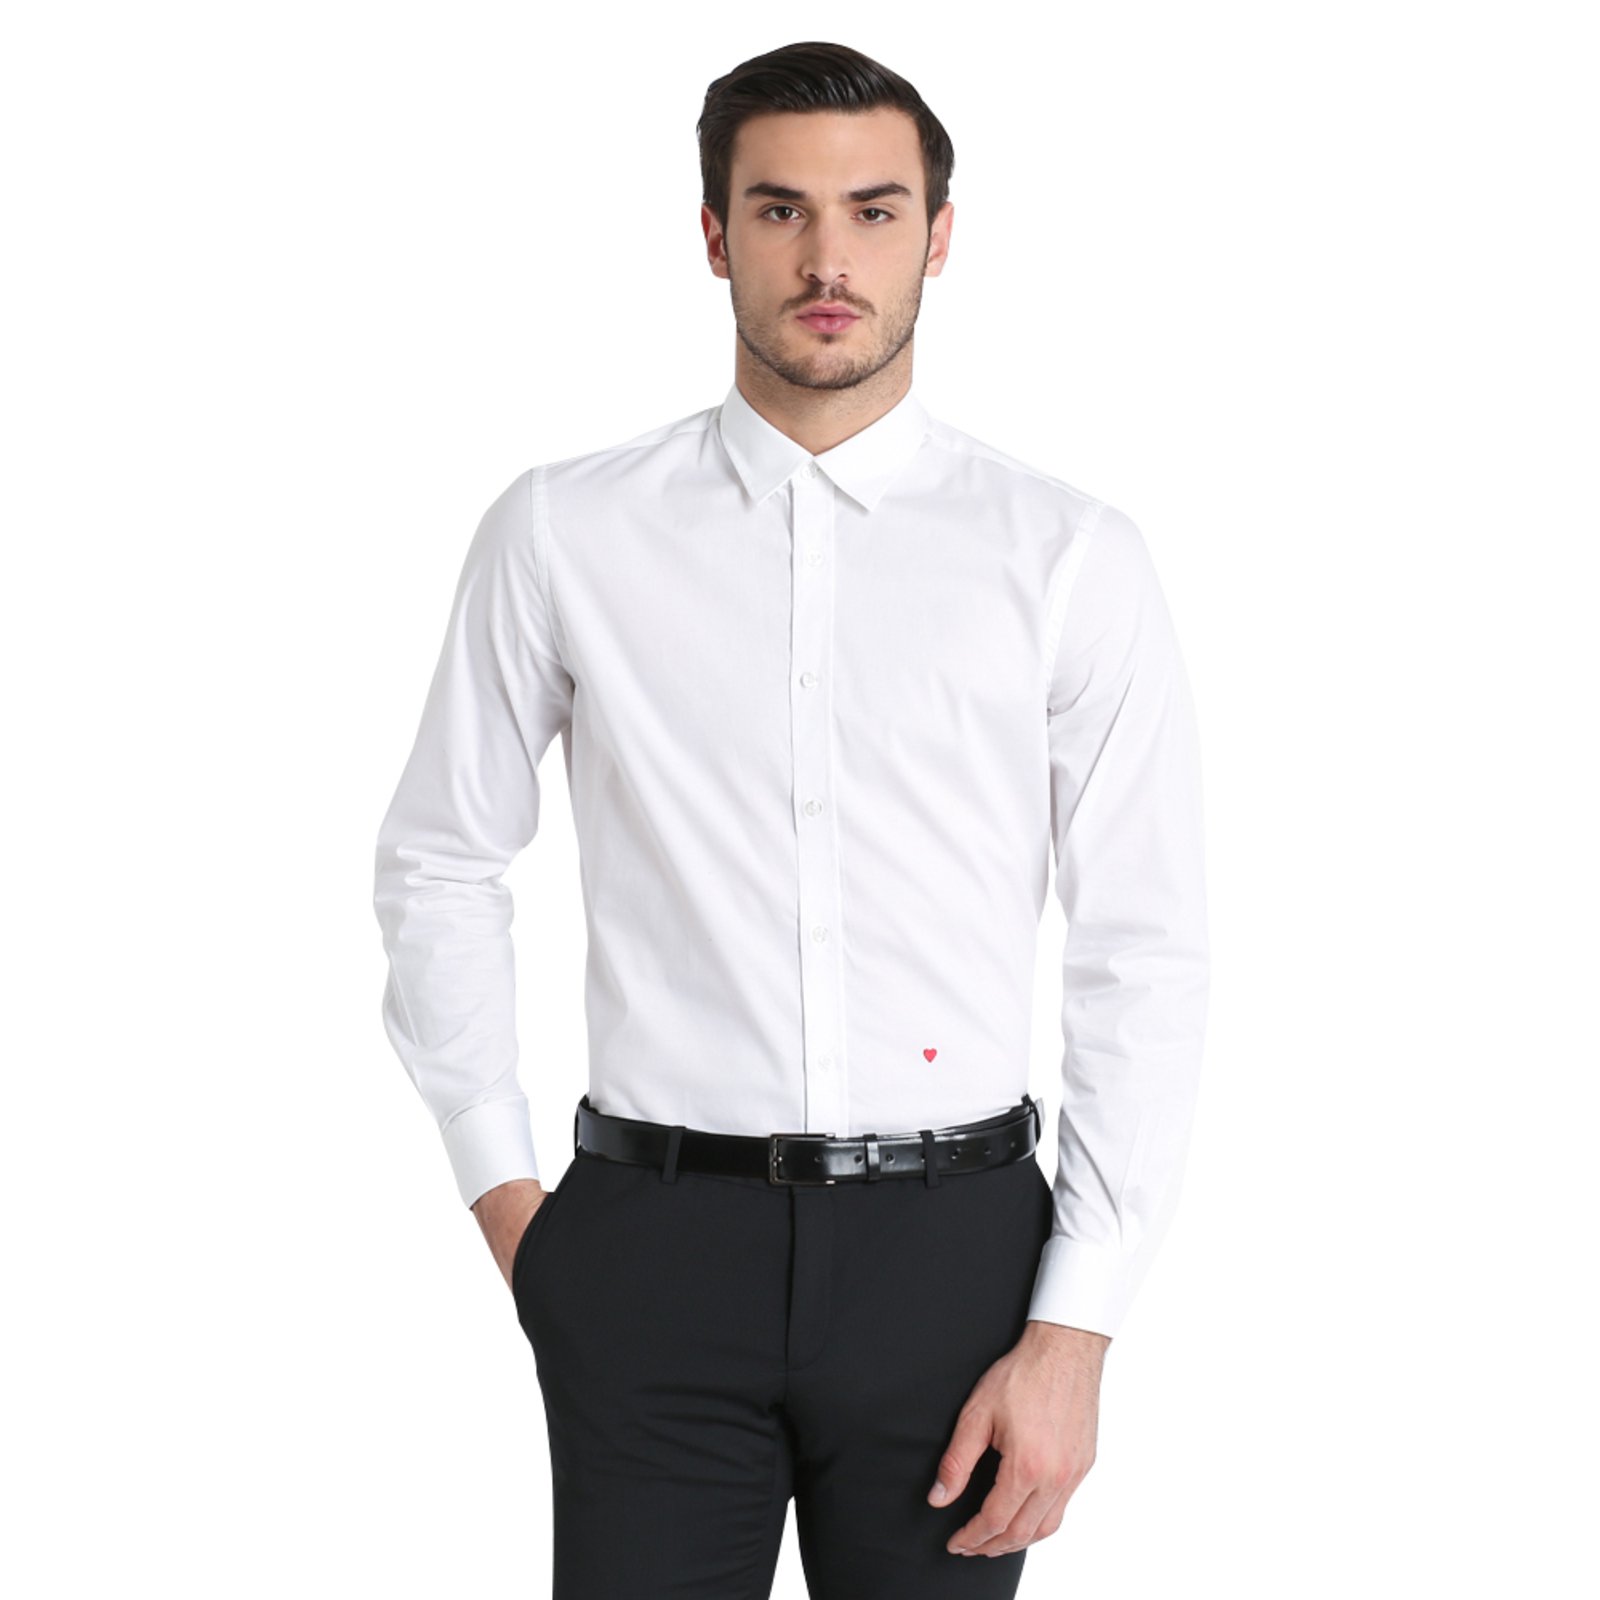 moschino white shirt